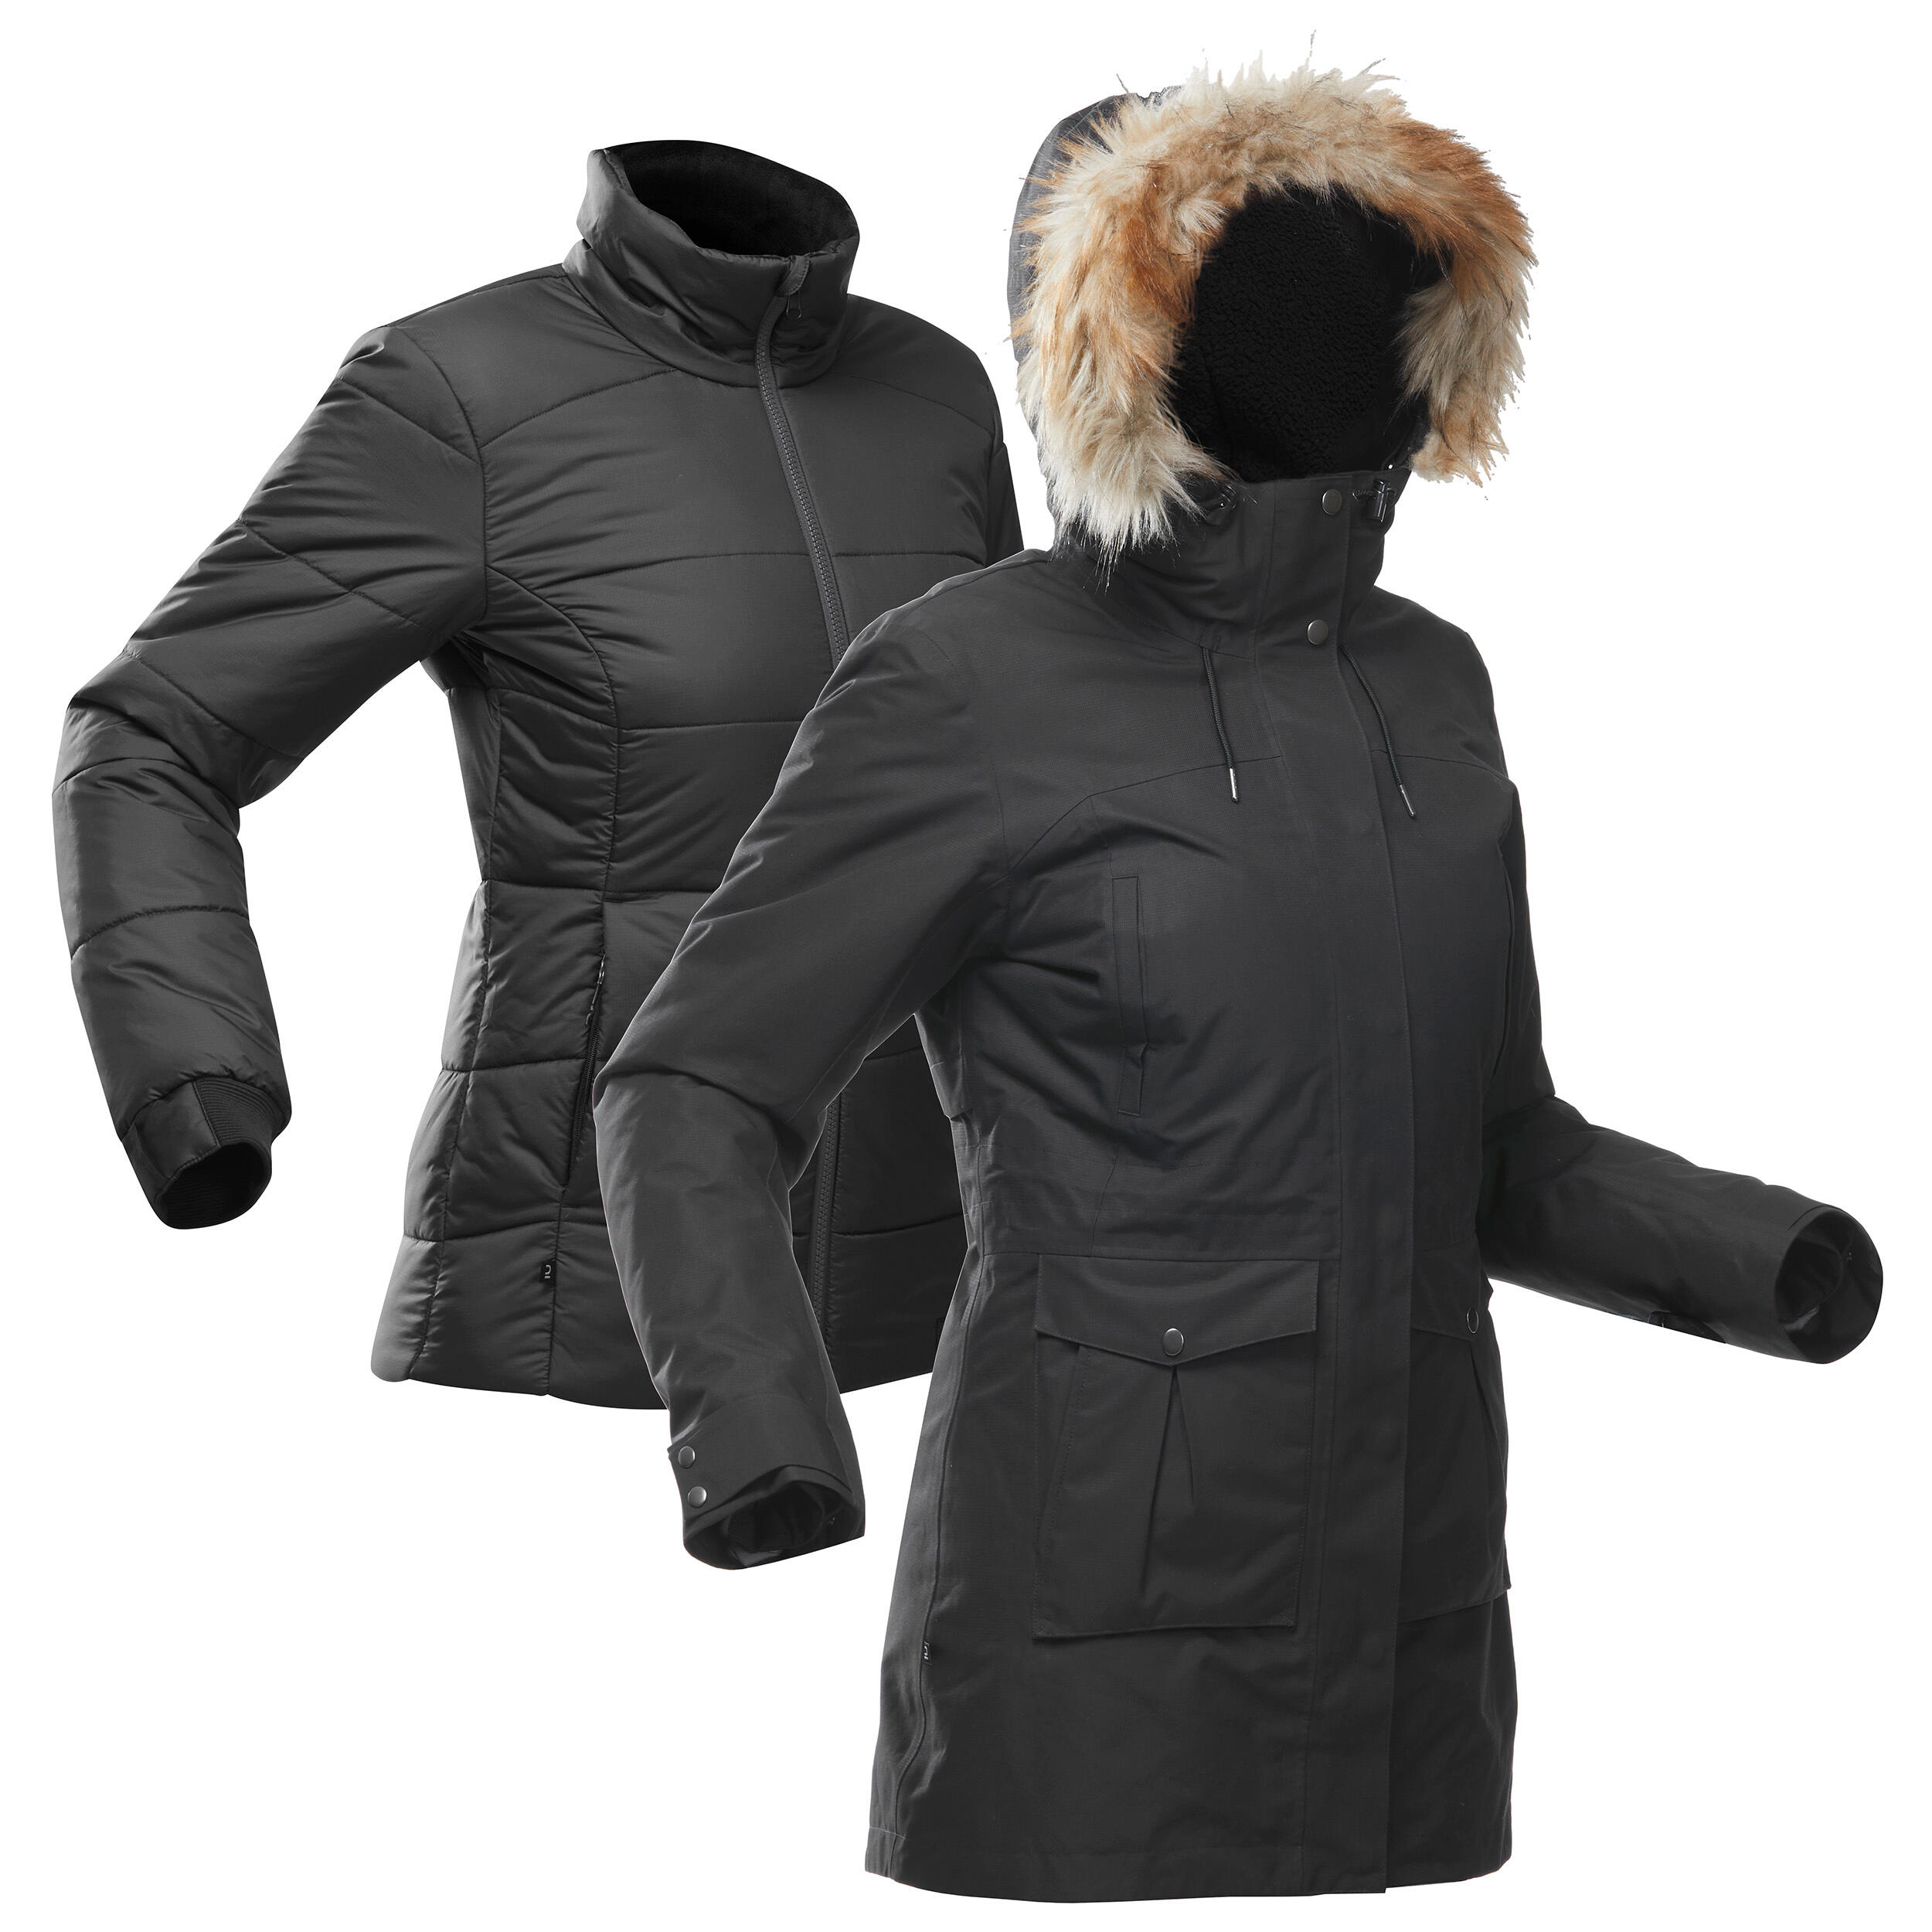 FORCLAZ Women's 3-in-1 Waterproof Travel Trekking Jacket - Travel 900 Warm -15° - black